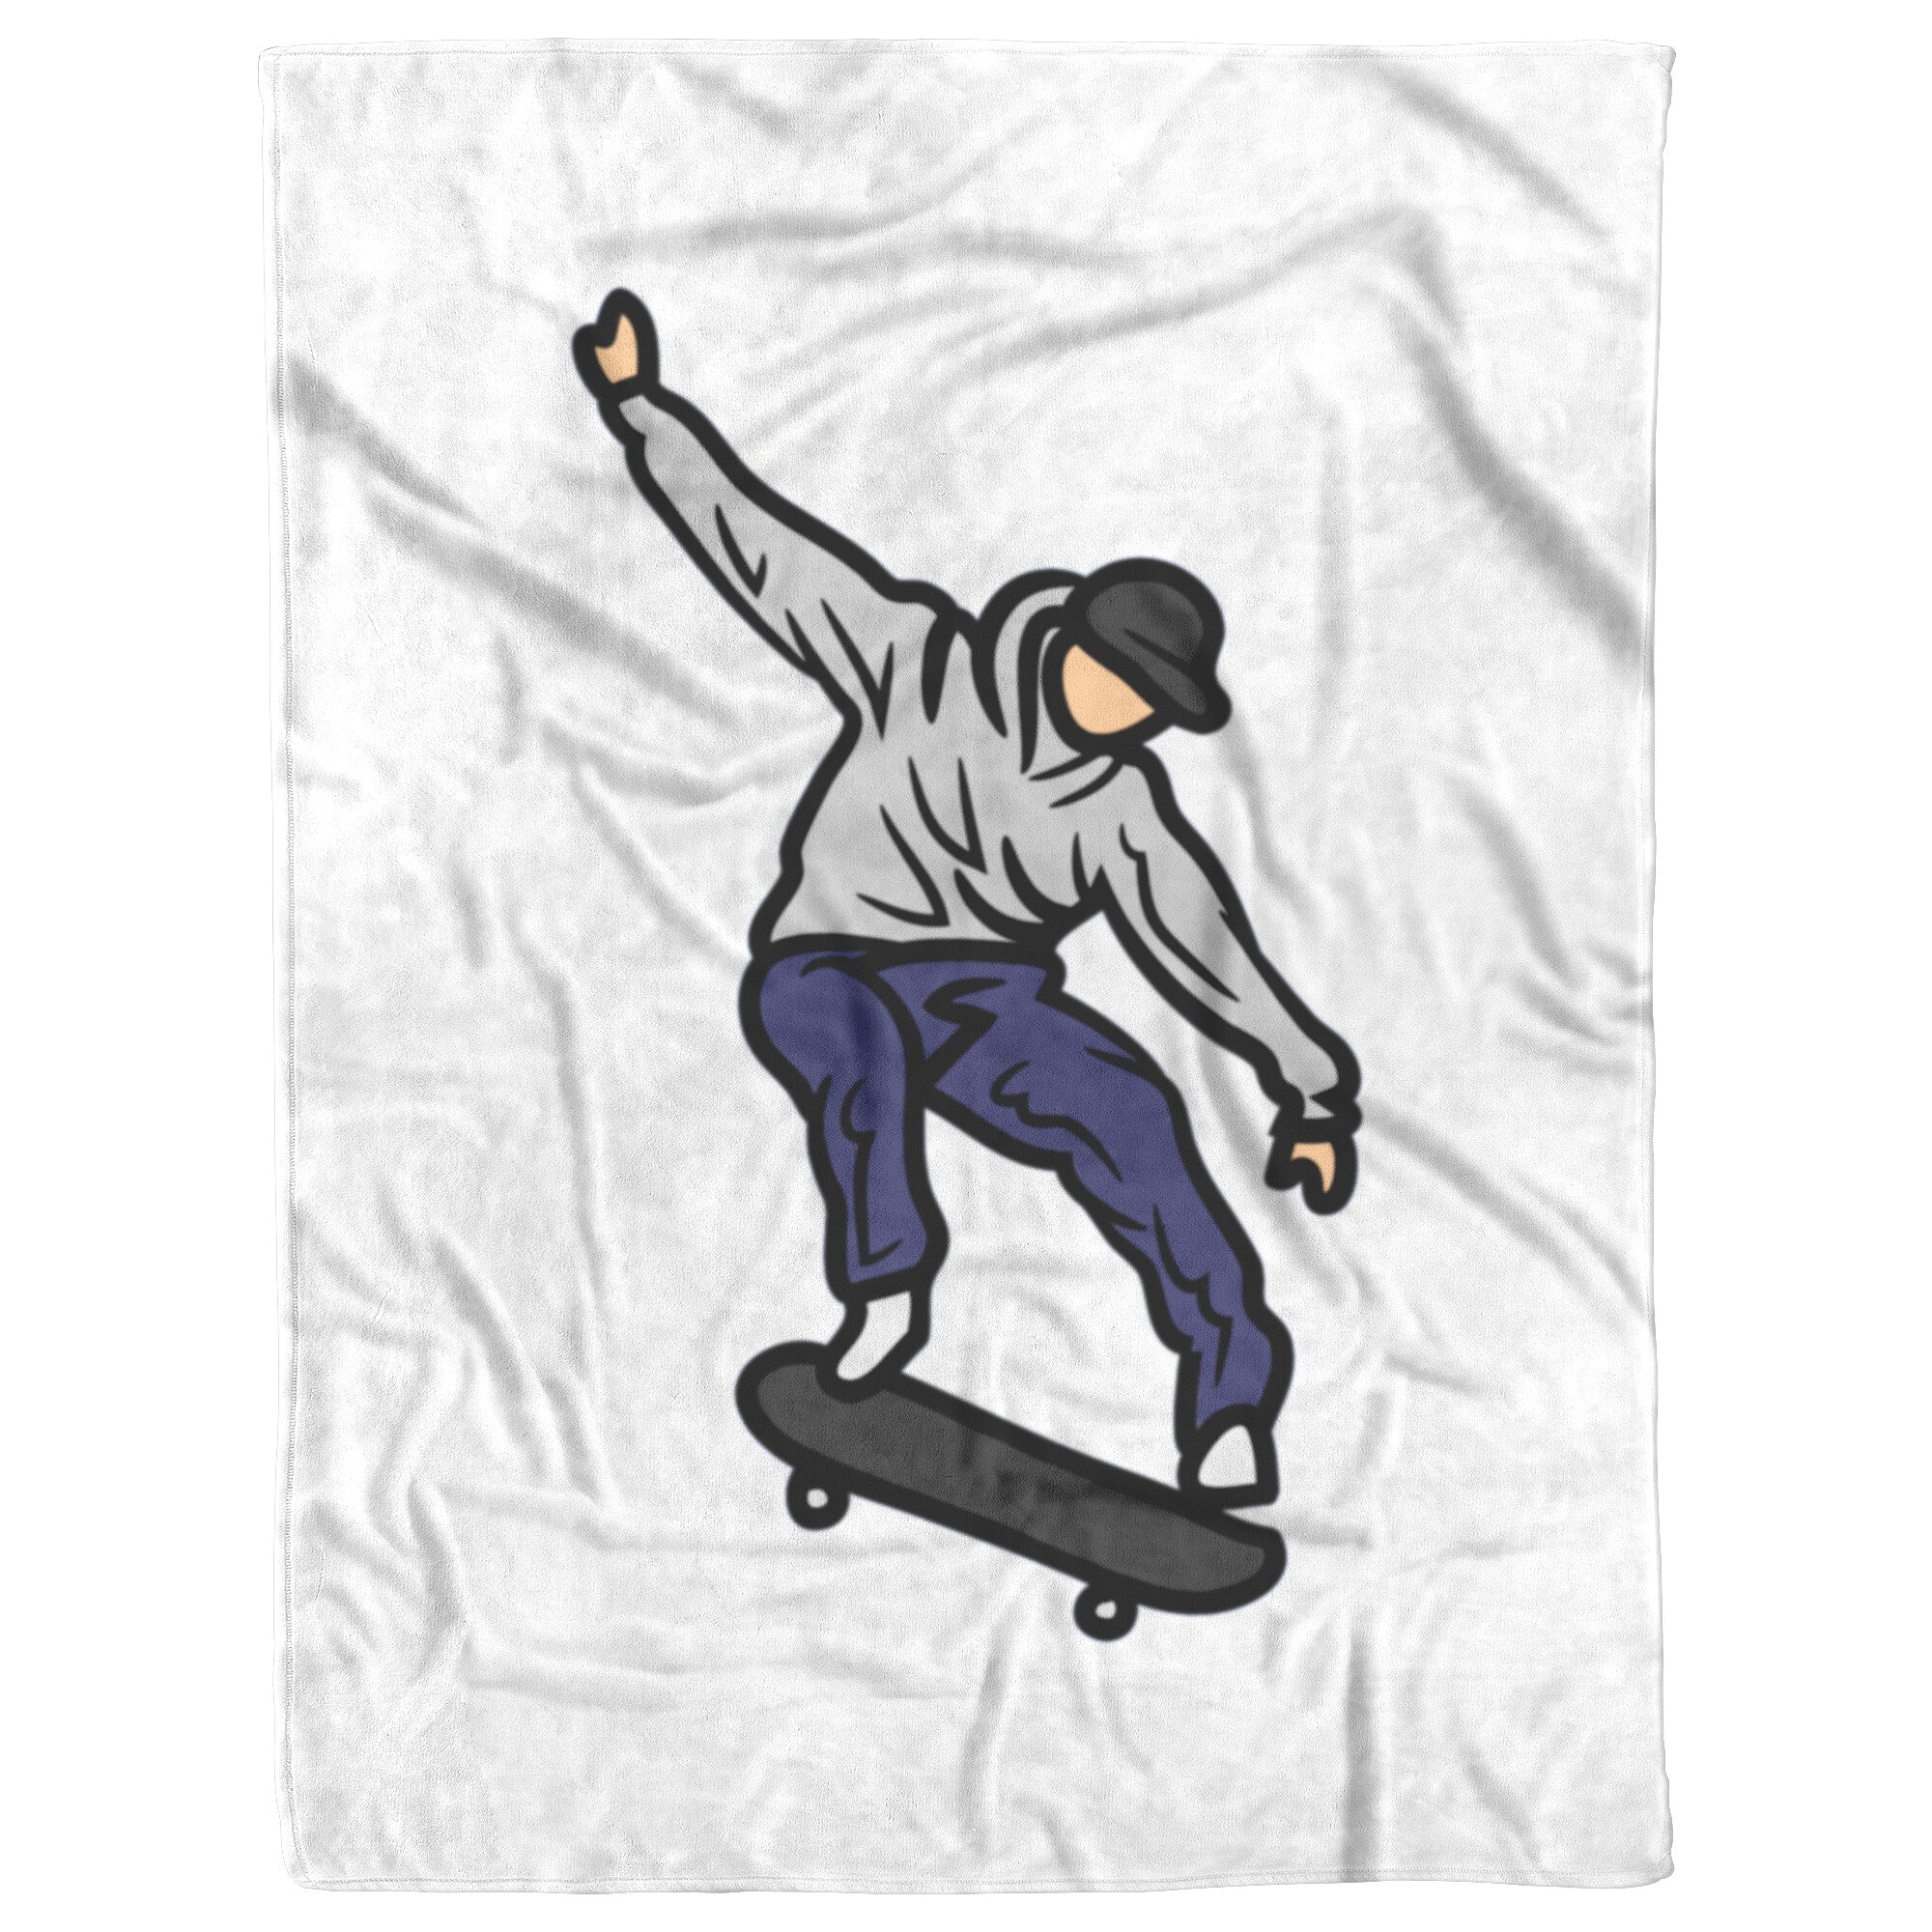 Skater Premium Fleece Blanket by Finger Space